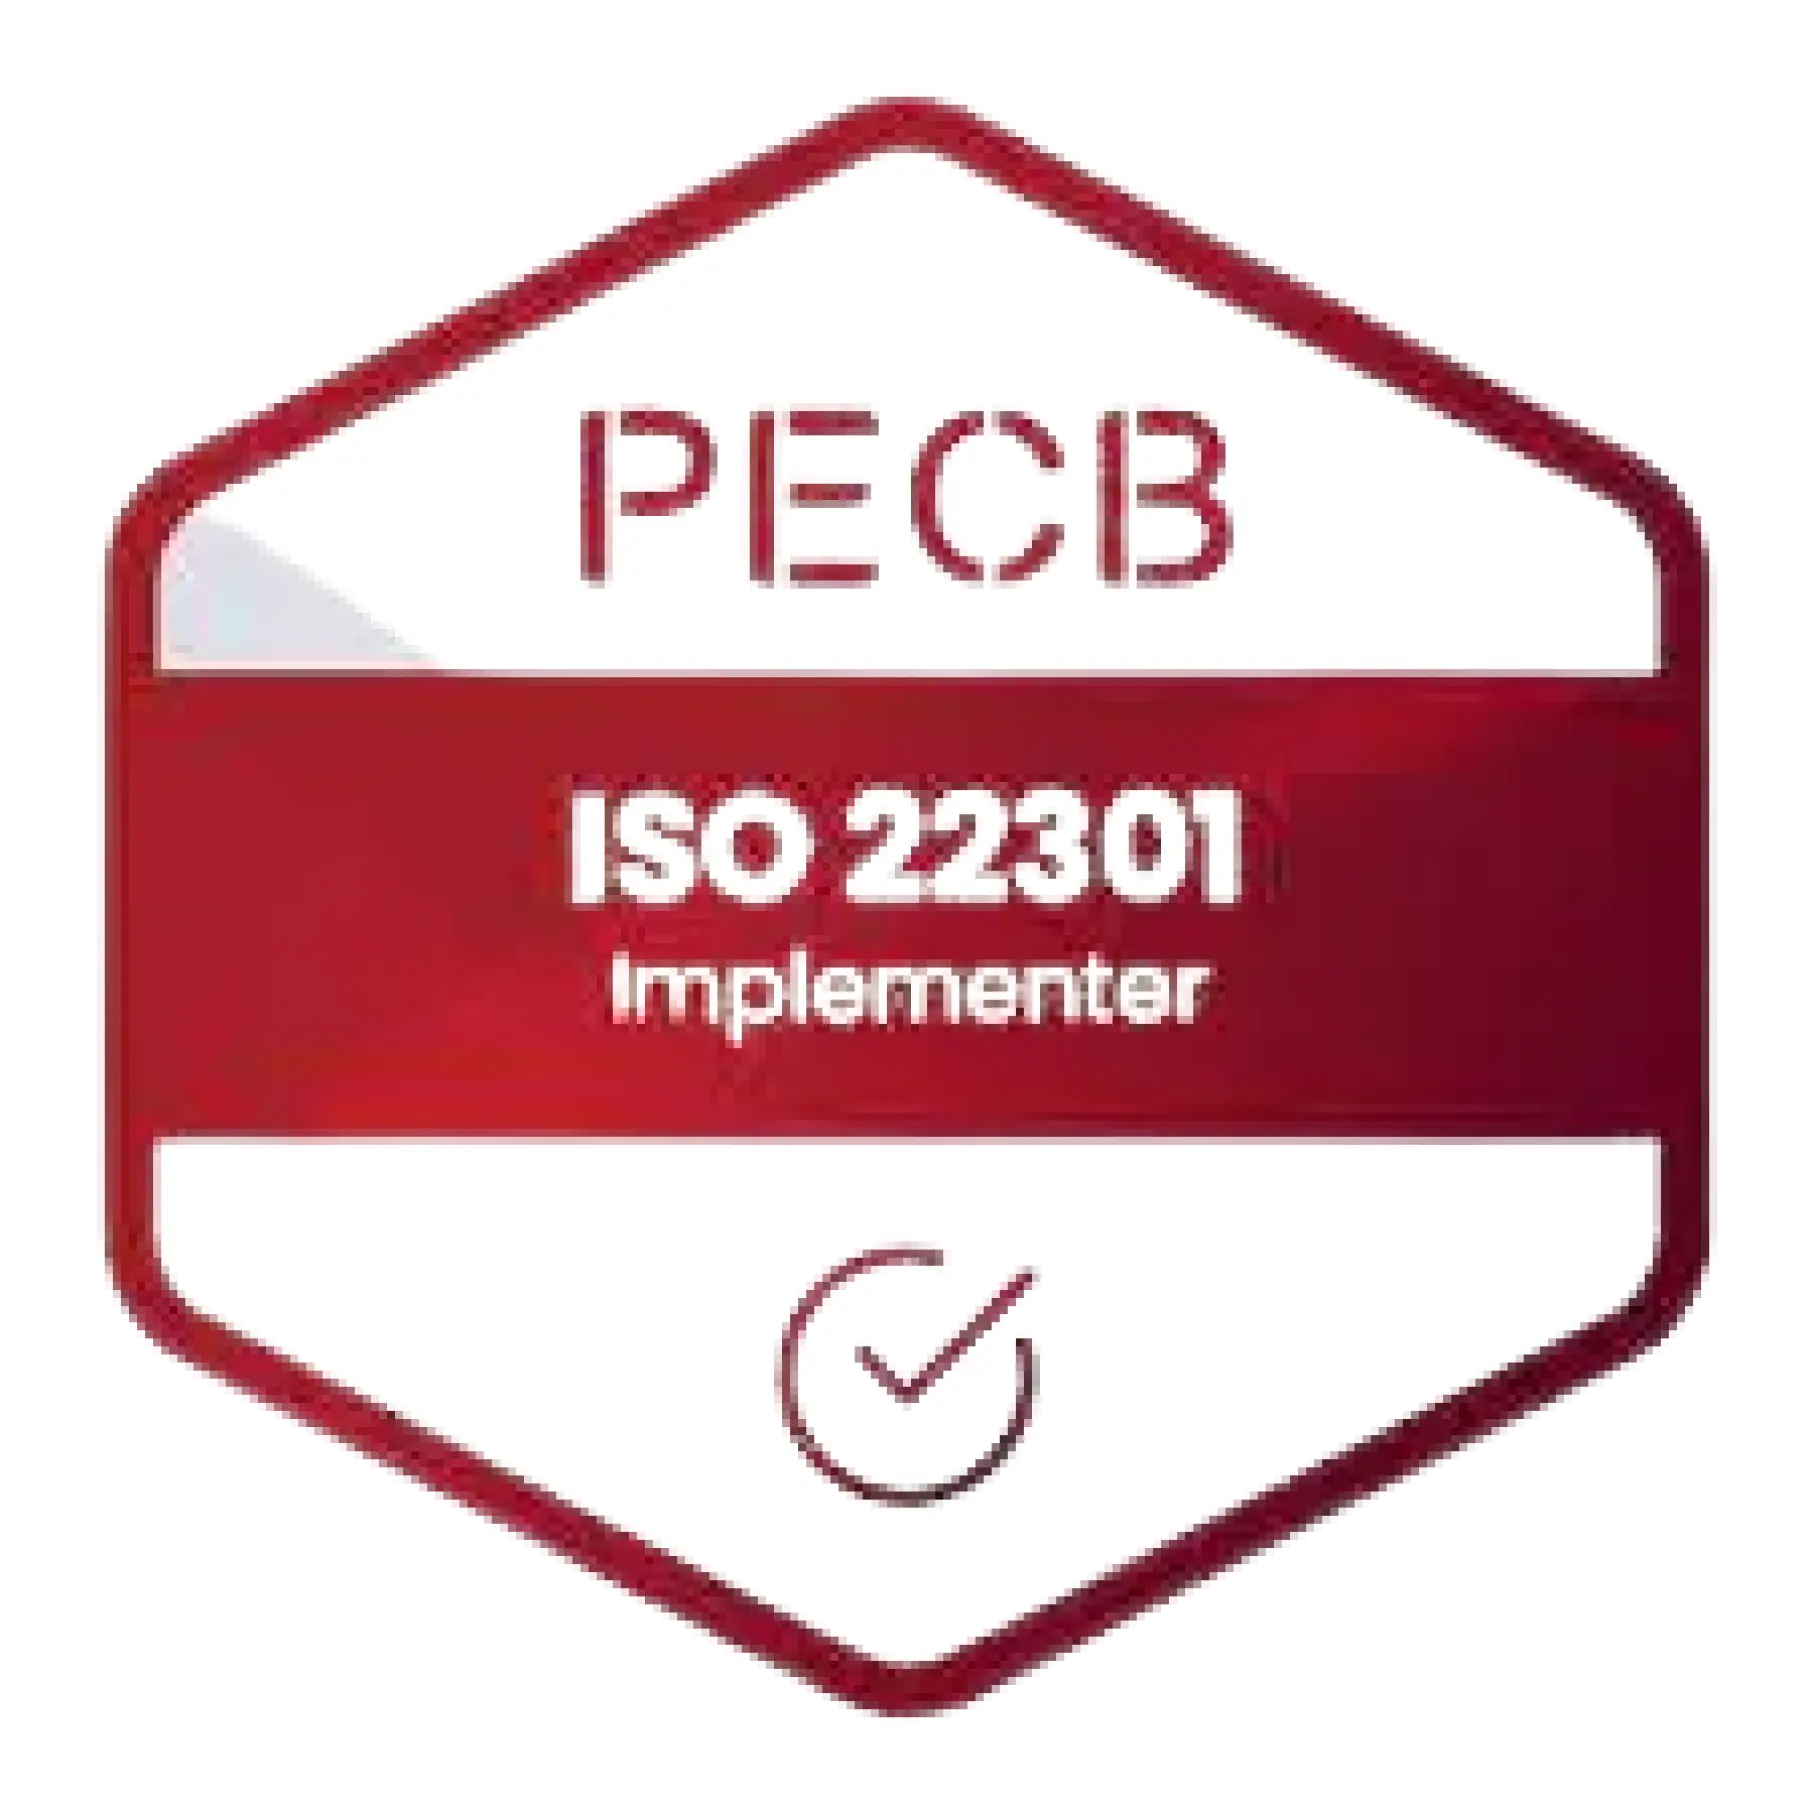 Sertifisert ISO 22301 Lead Implementer-merke oppnådd etter å ha deltatt på ISO 22301 Lead Implementer-kurs og eksamen